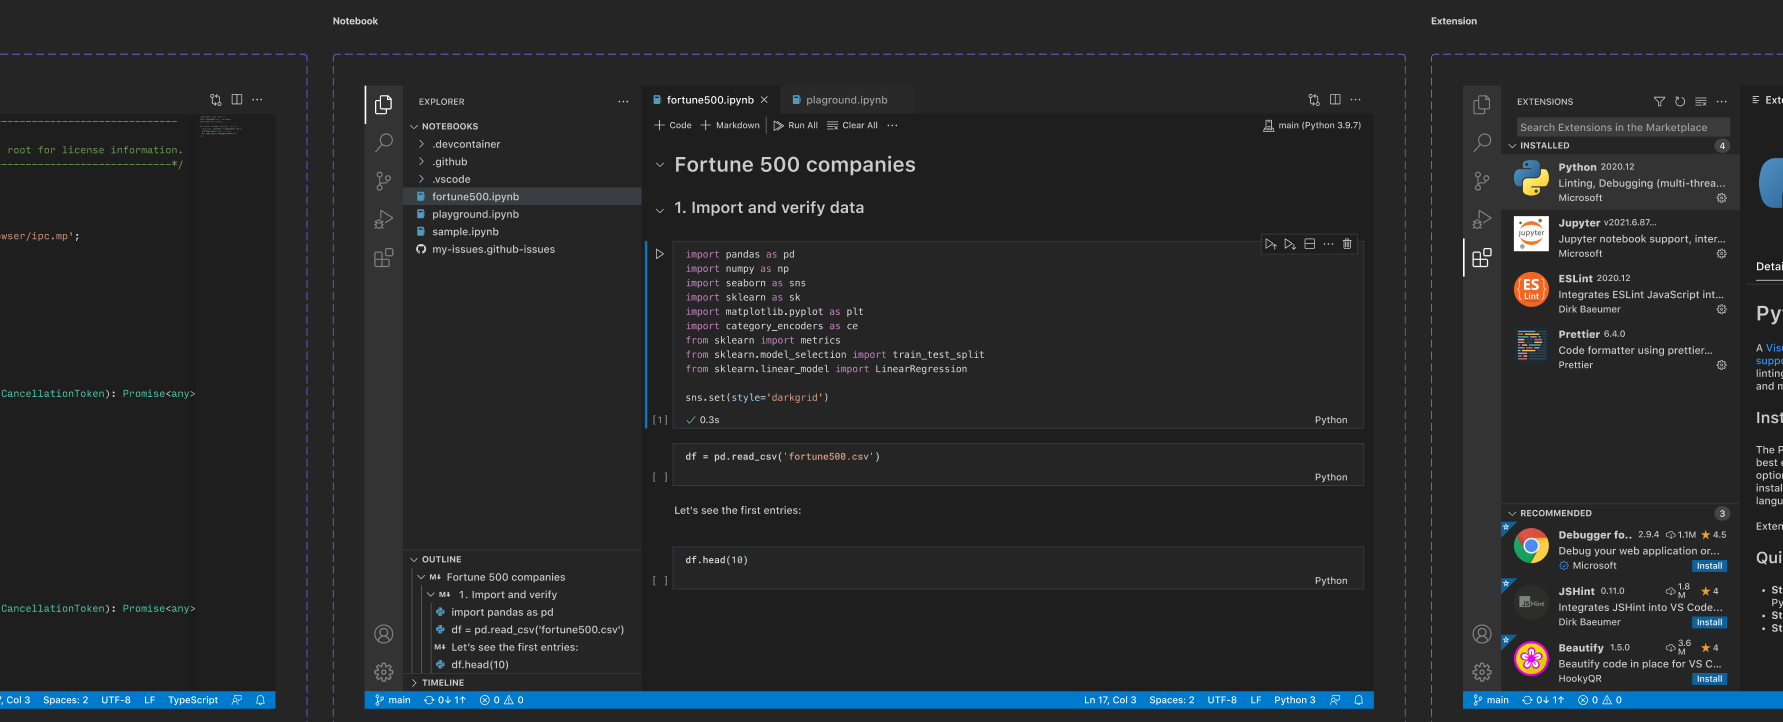 Рис. 8. Команда Microsoft тоже делится гайдом по Visual Studio Code в сообществе Figma и в гитхабе для создания аддонов